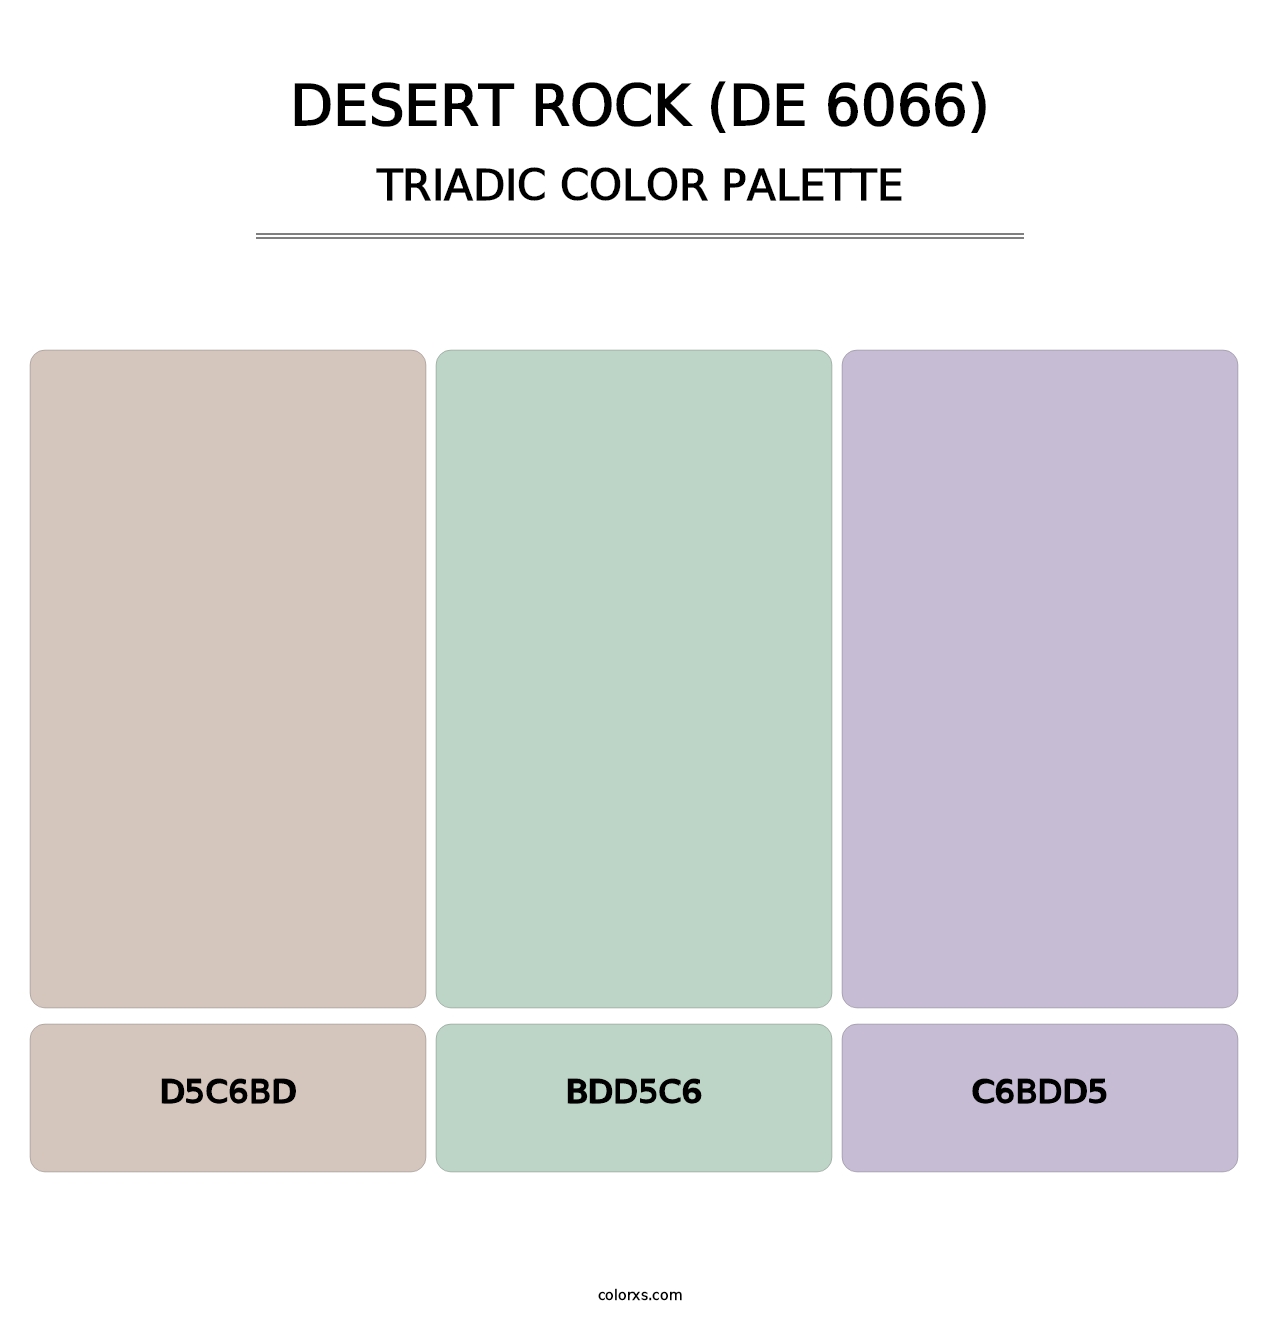 Desert Rock (DE 6066) - Triadic Color Palette